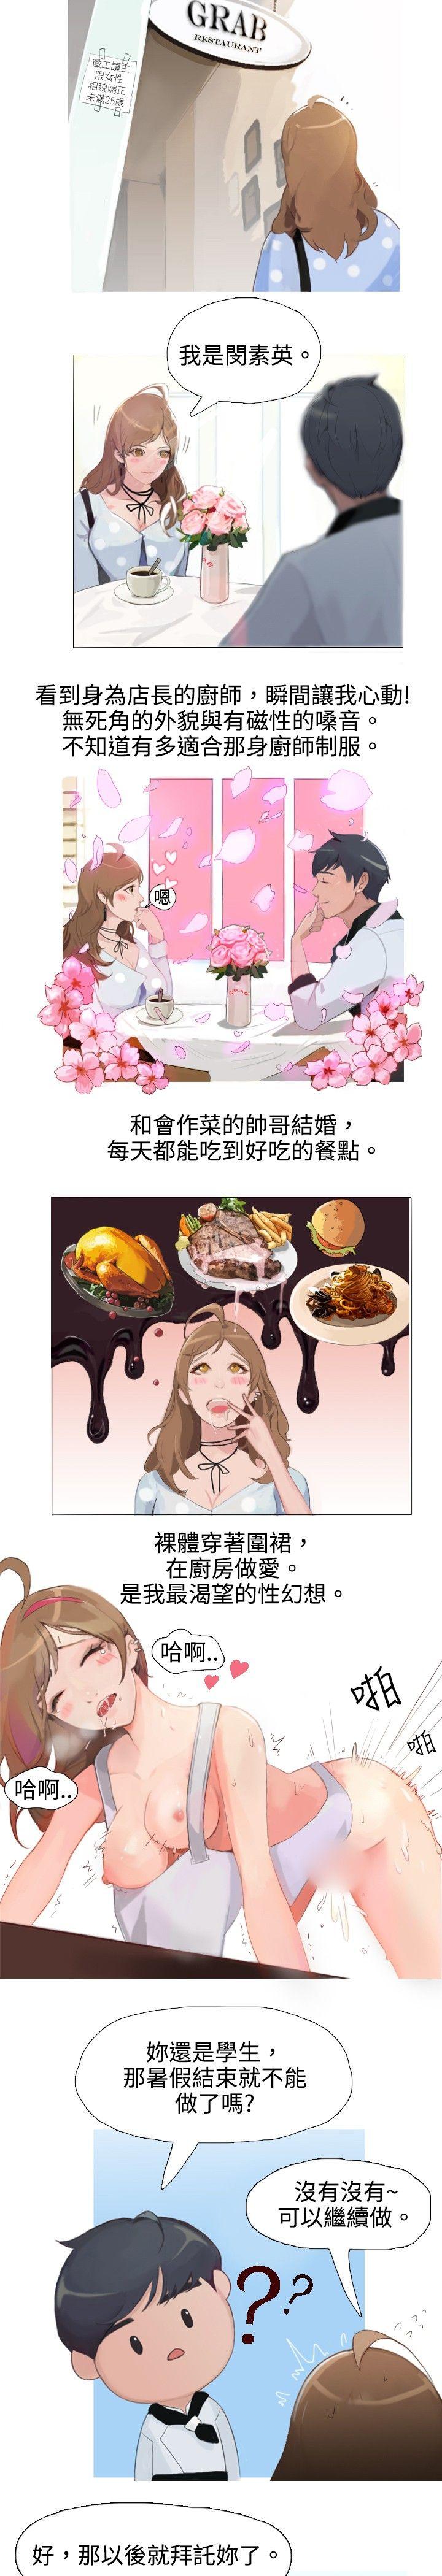 秘密Story  与型男主厨的花癡故事(上) 漫画图片2.jpg